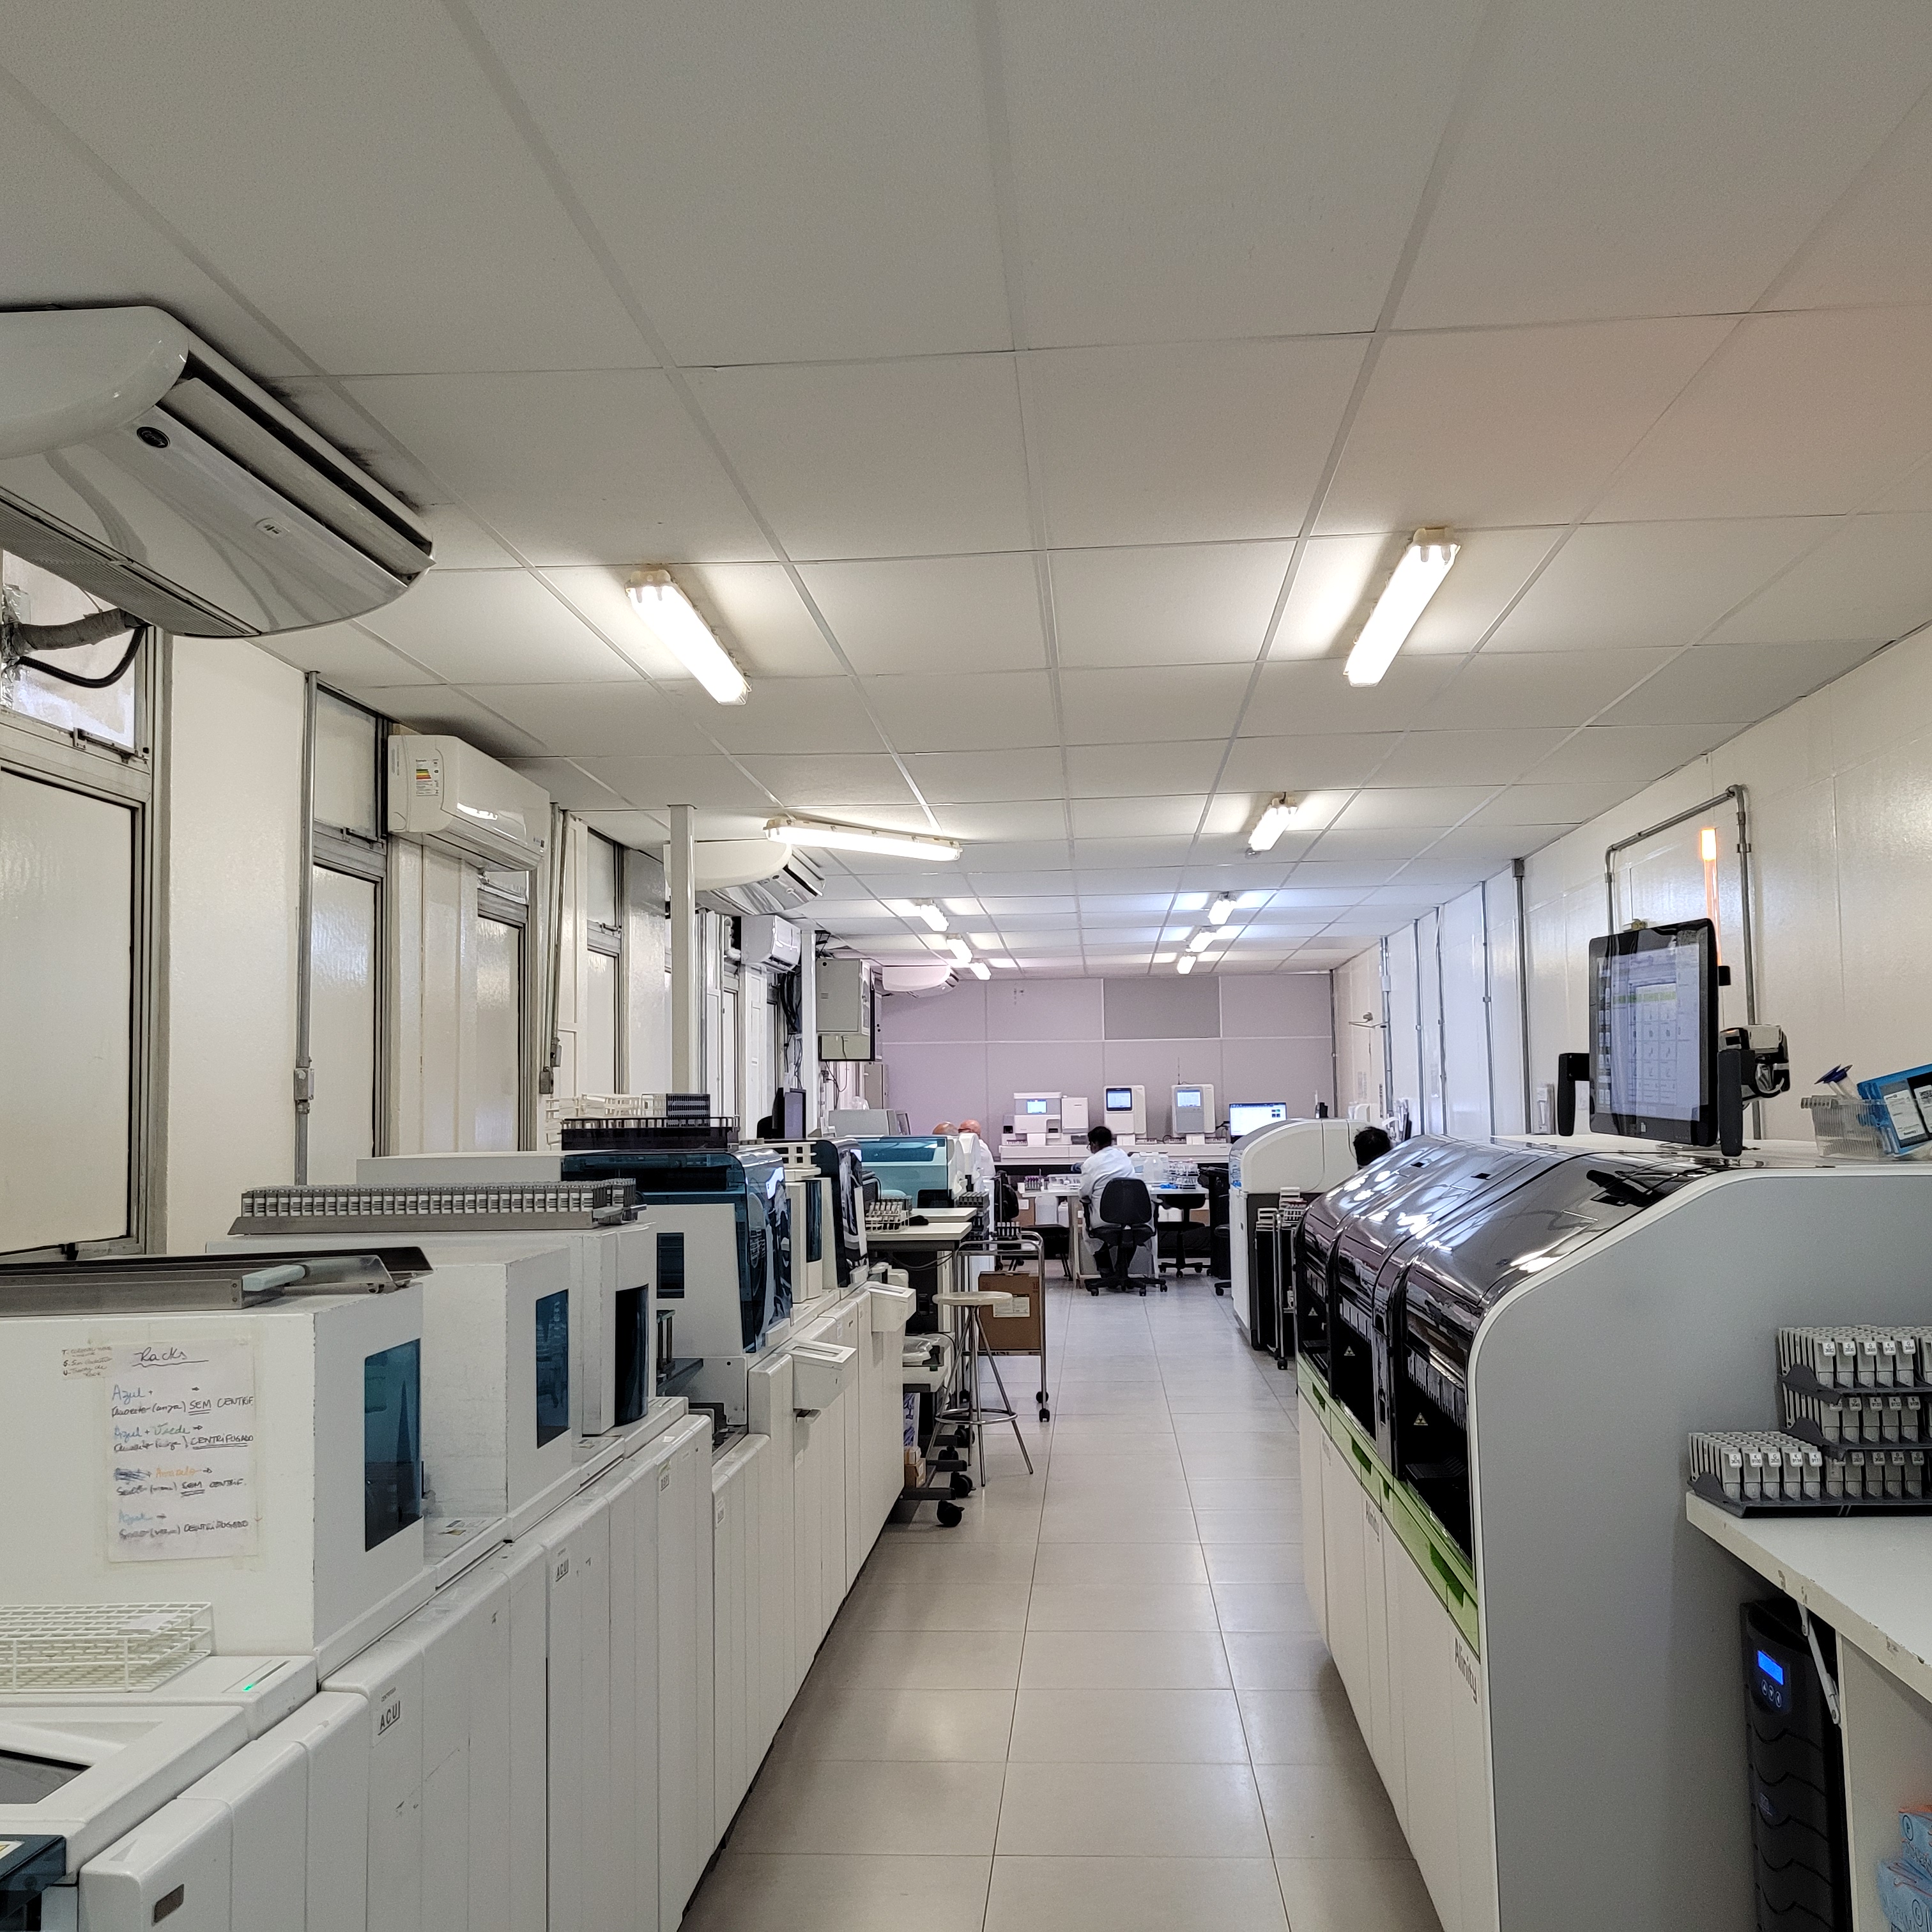 Imagem de uma sala com equipamentos do laboratório. Ao fundo é possível observar as costas de uma profissional sentada à mesa.